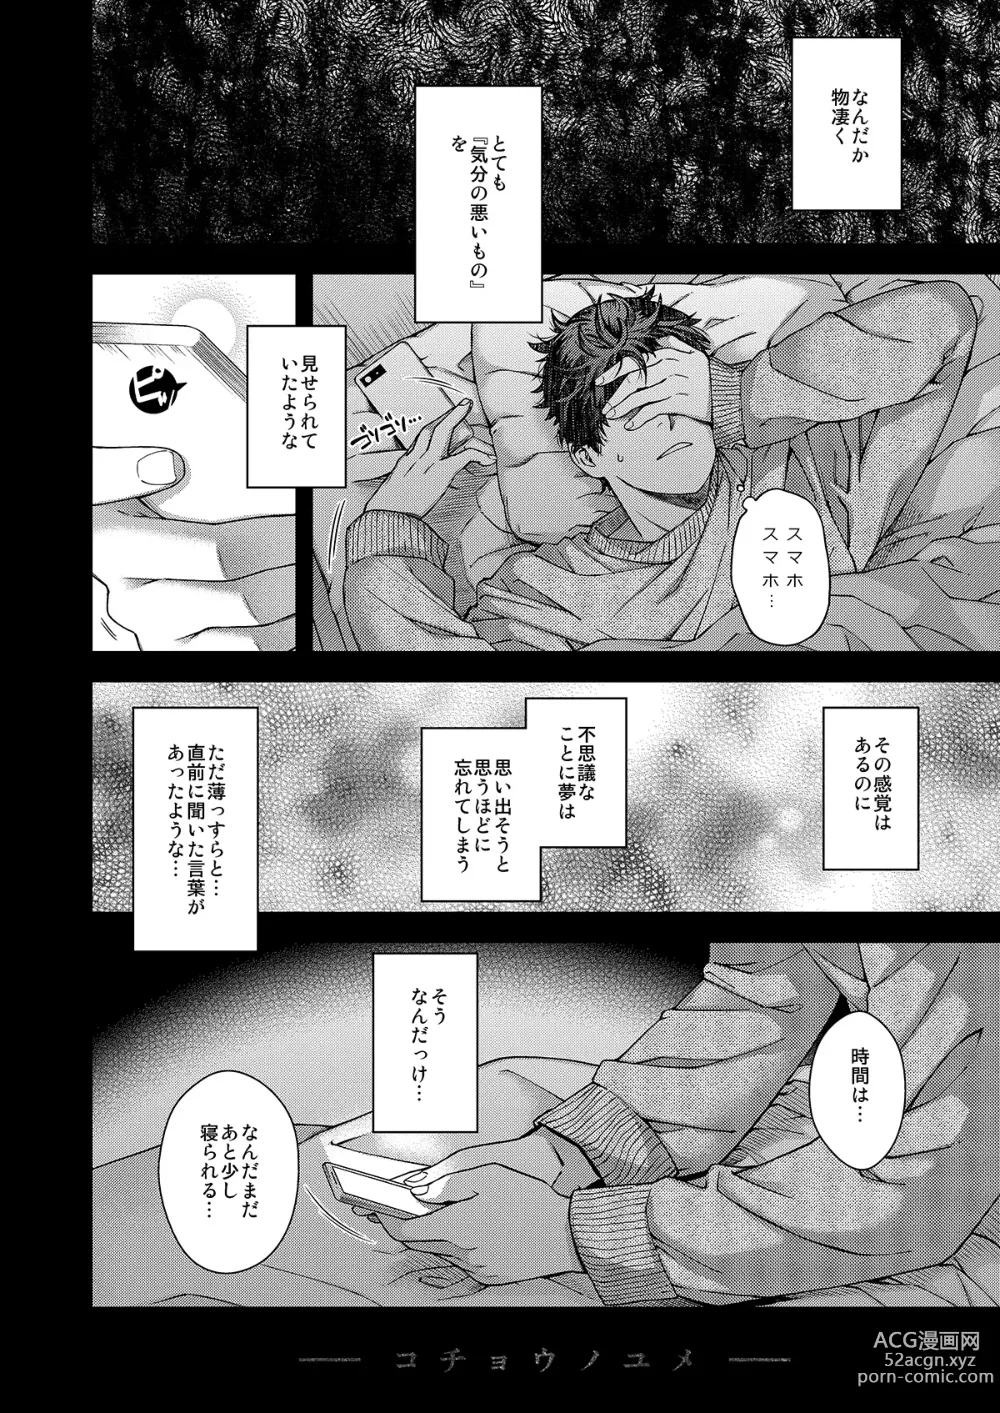 Page 18 of doujinshi Aikagi no Kemono 2